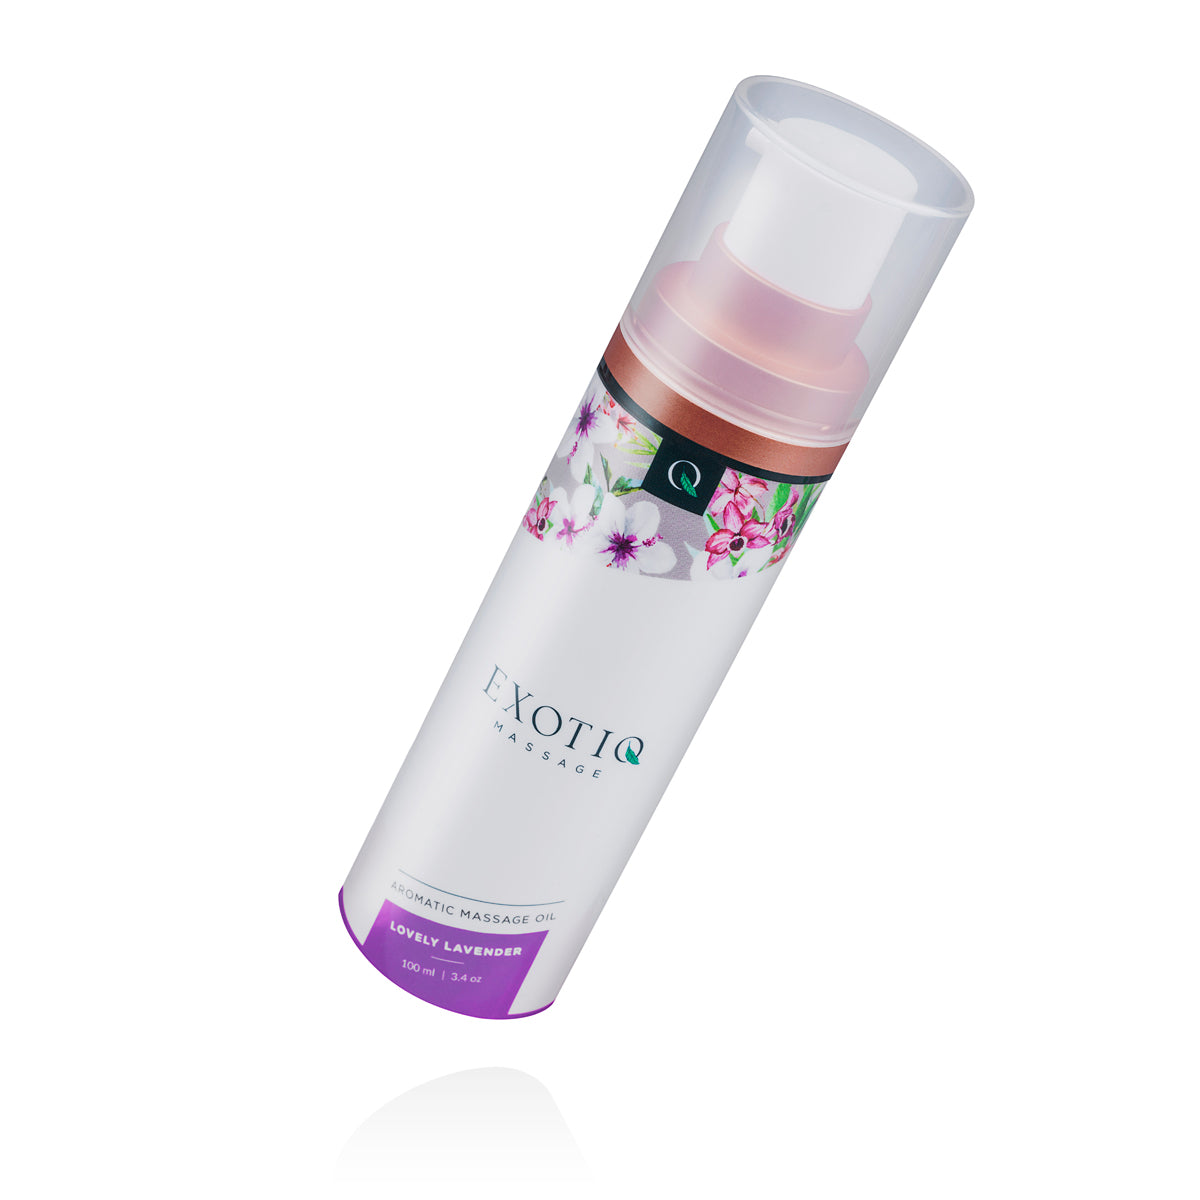 Luxe, heerlijk naar lavendel ruikende massage olie van Exotiq. Het flesje bevat 100 ml. Exotiq massage olie koop je bij Flavourez